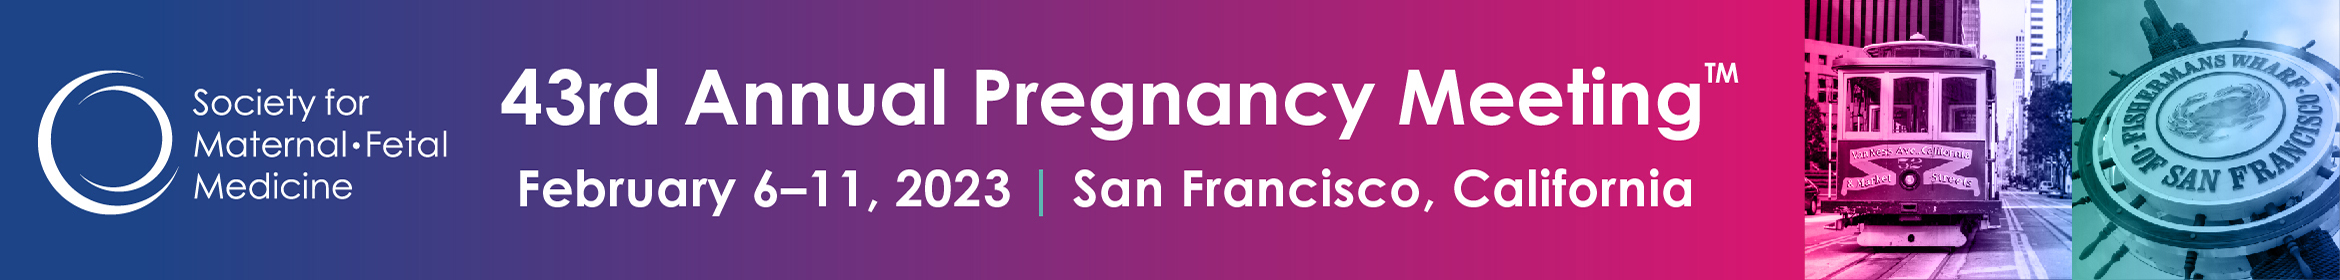 43rd Annual Pregnancy Meeting Main banner